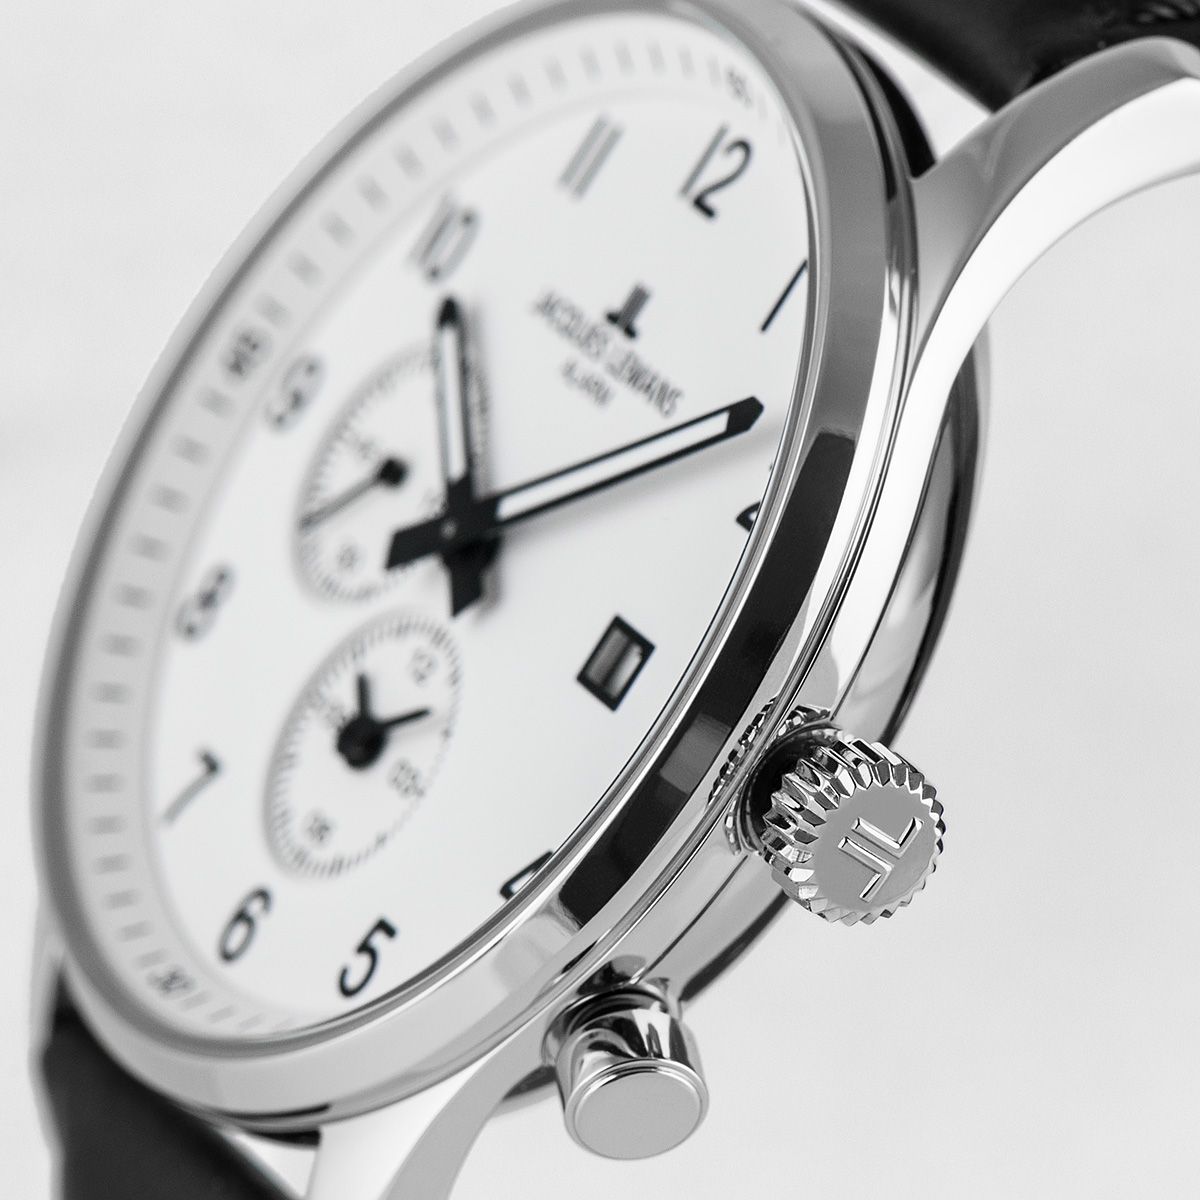 Men's Classic Watches | Jacques Lemans®